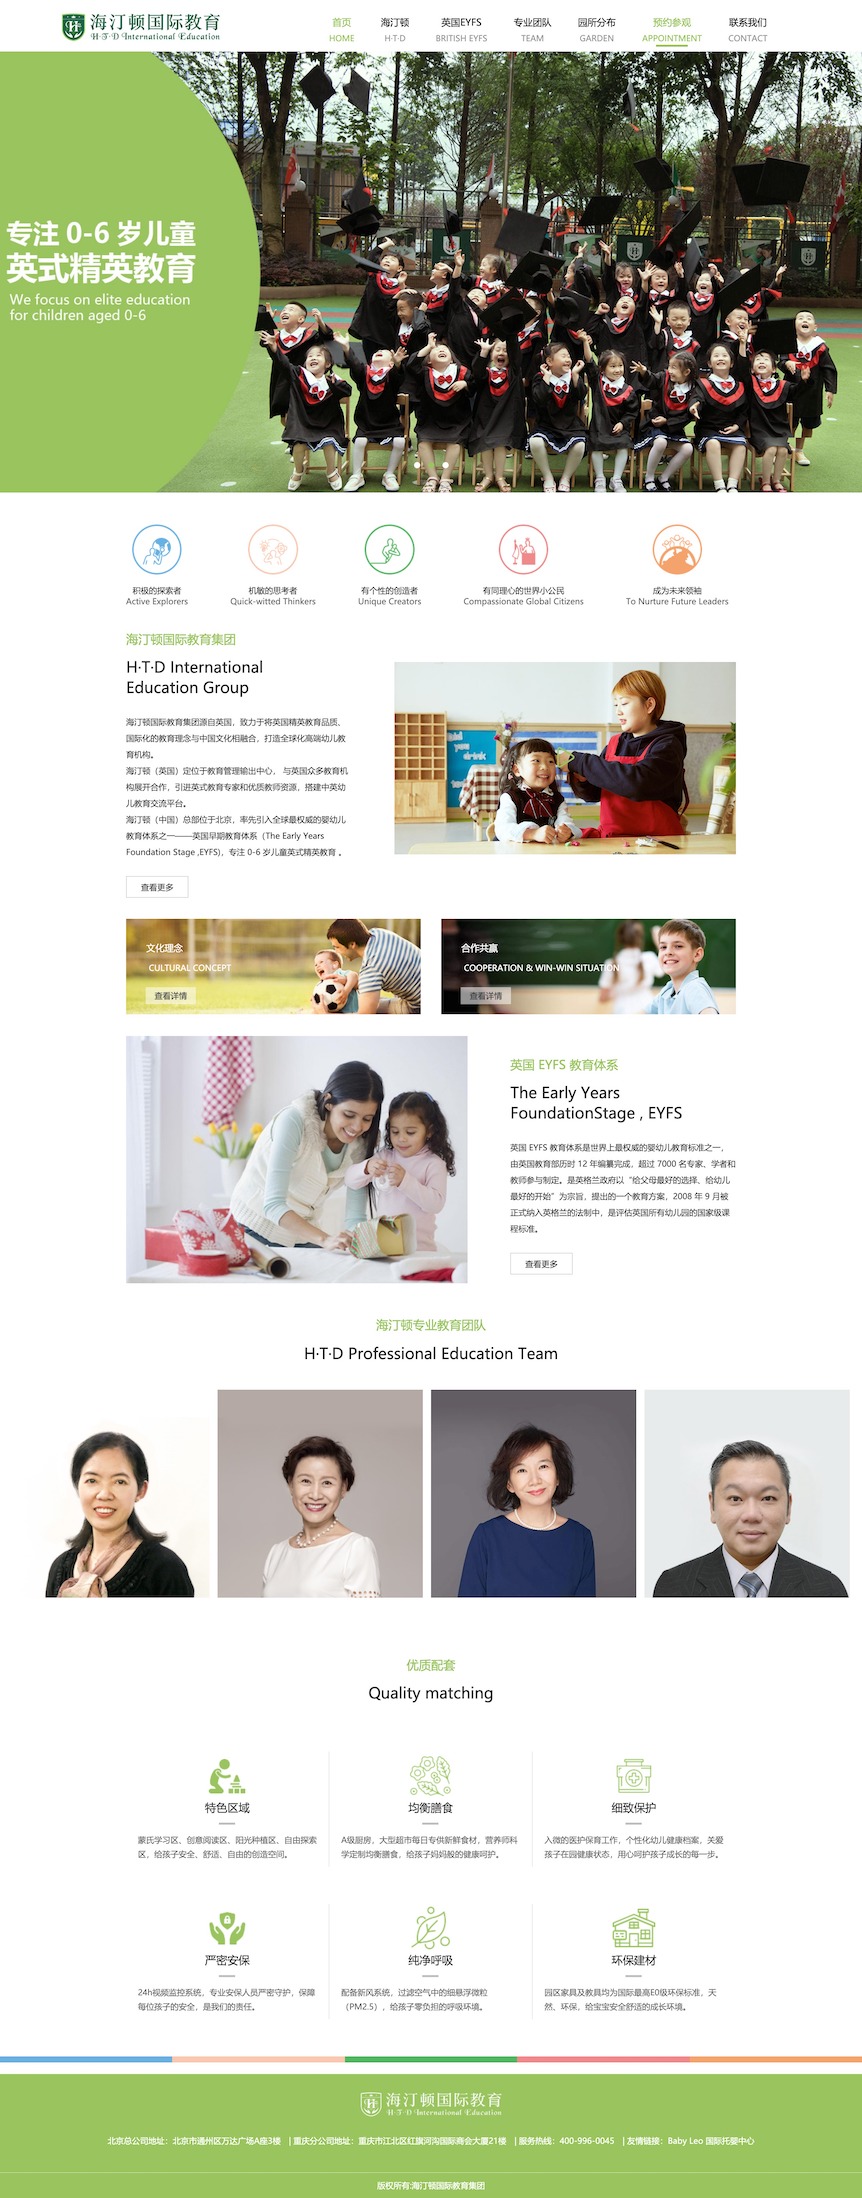 海汀顿国际教育电脑网站